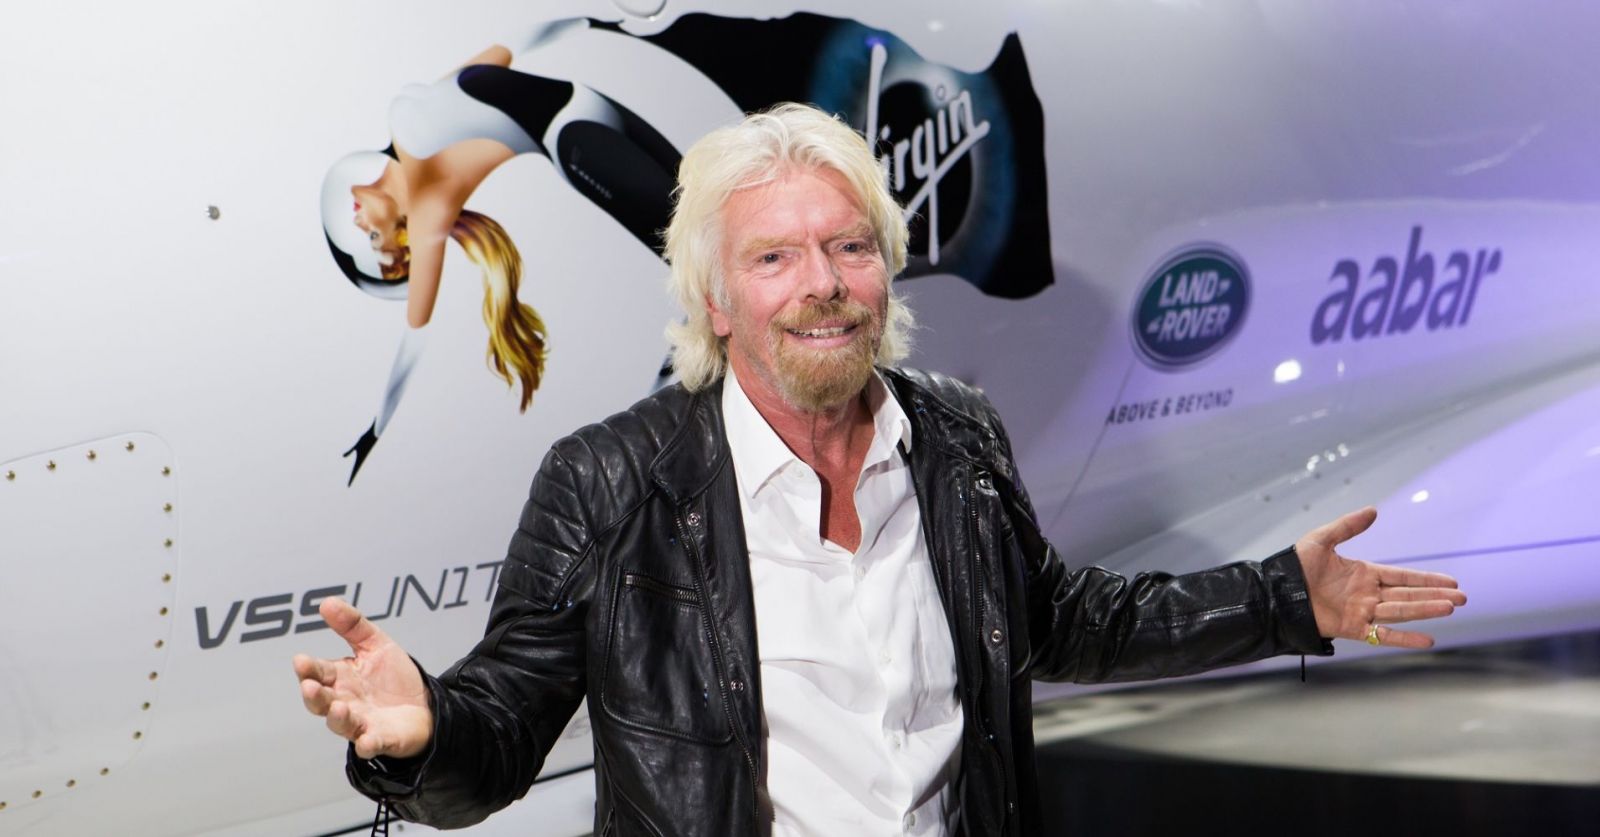 Tỷ phú Richard Branson trước tàu con thoi Unity do công ty Virgin Galactic của ông chế tạo